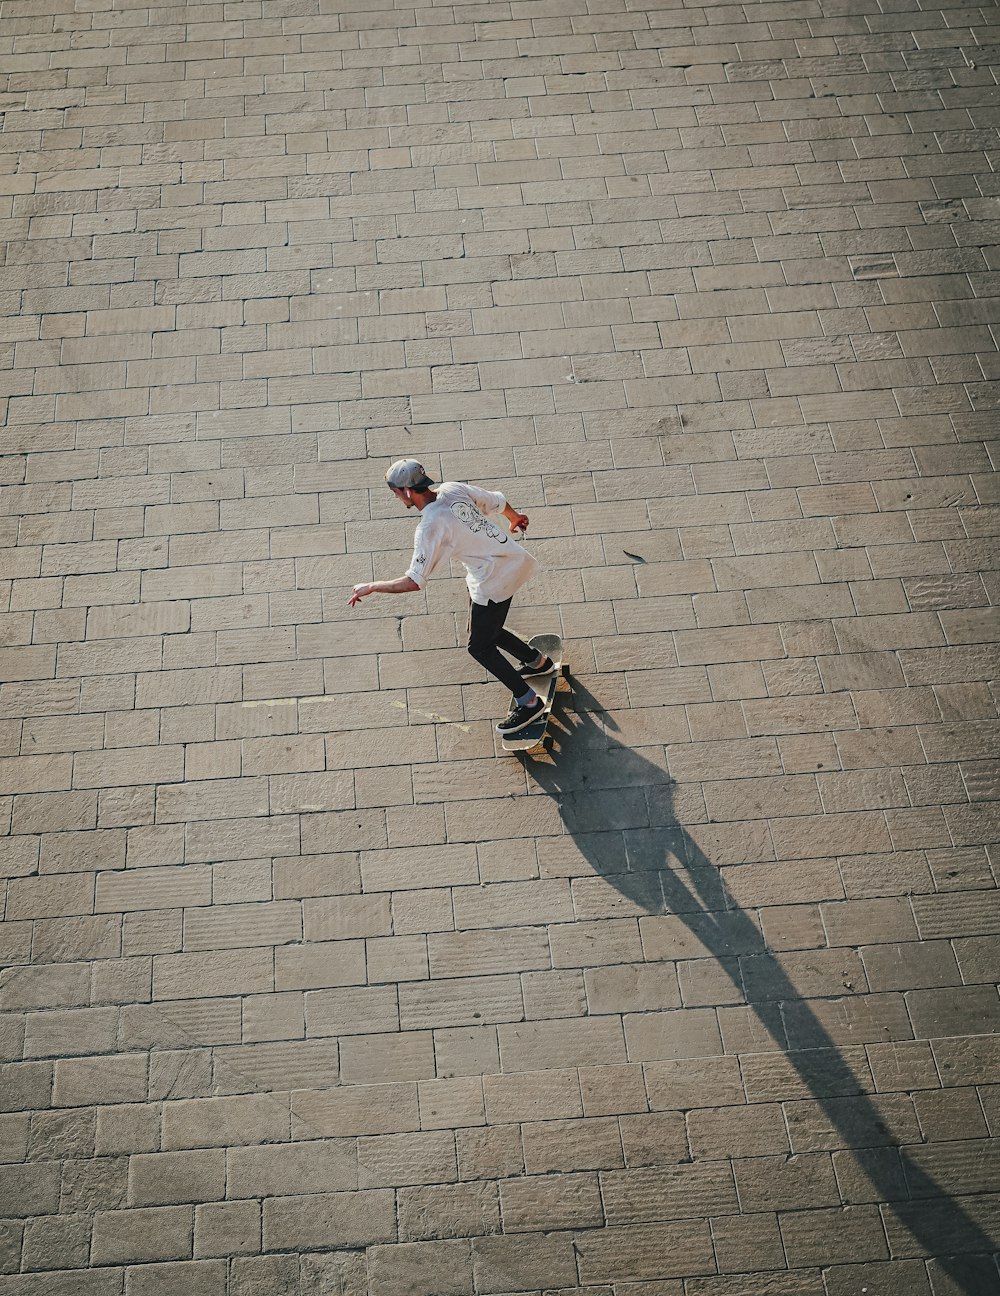 a skateboarder flies through the air